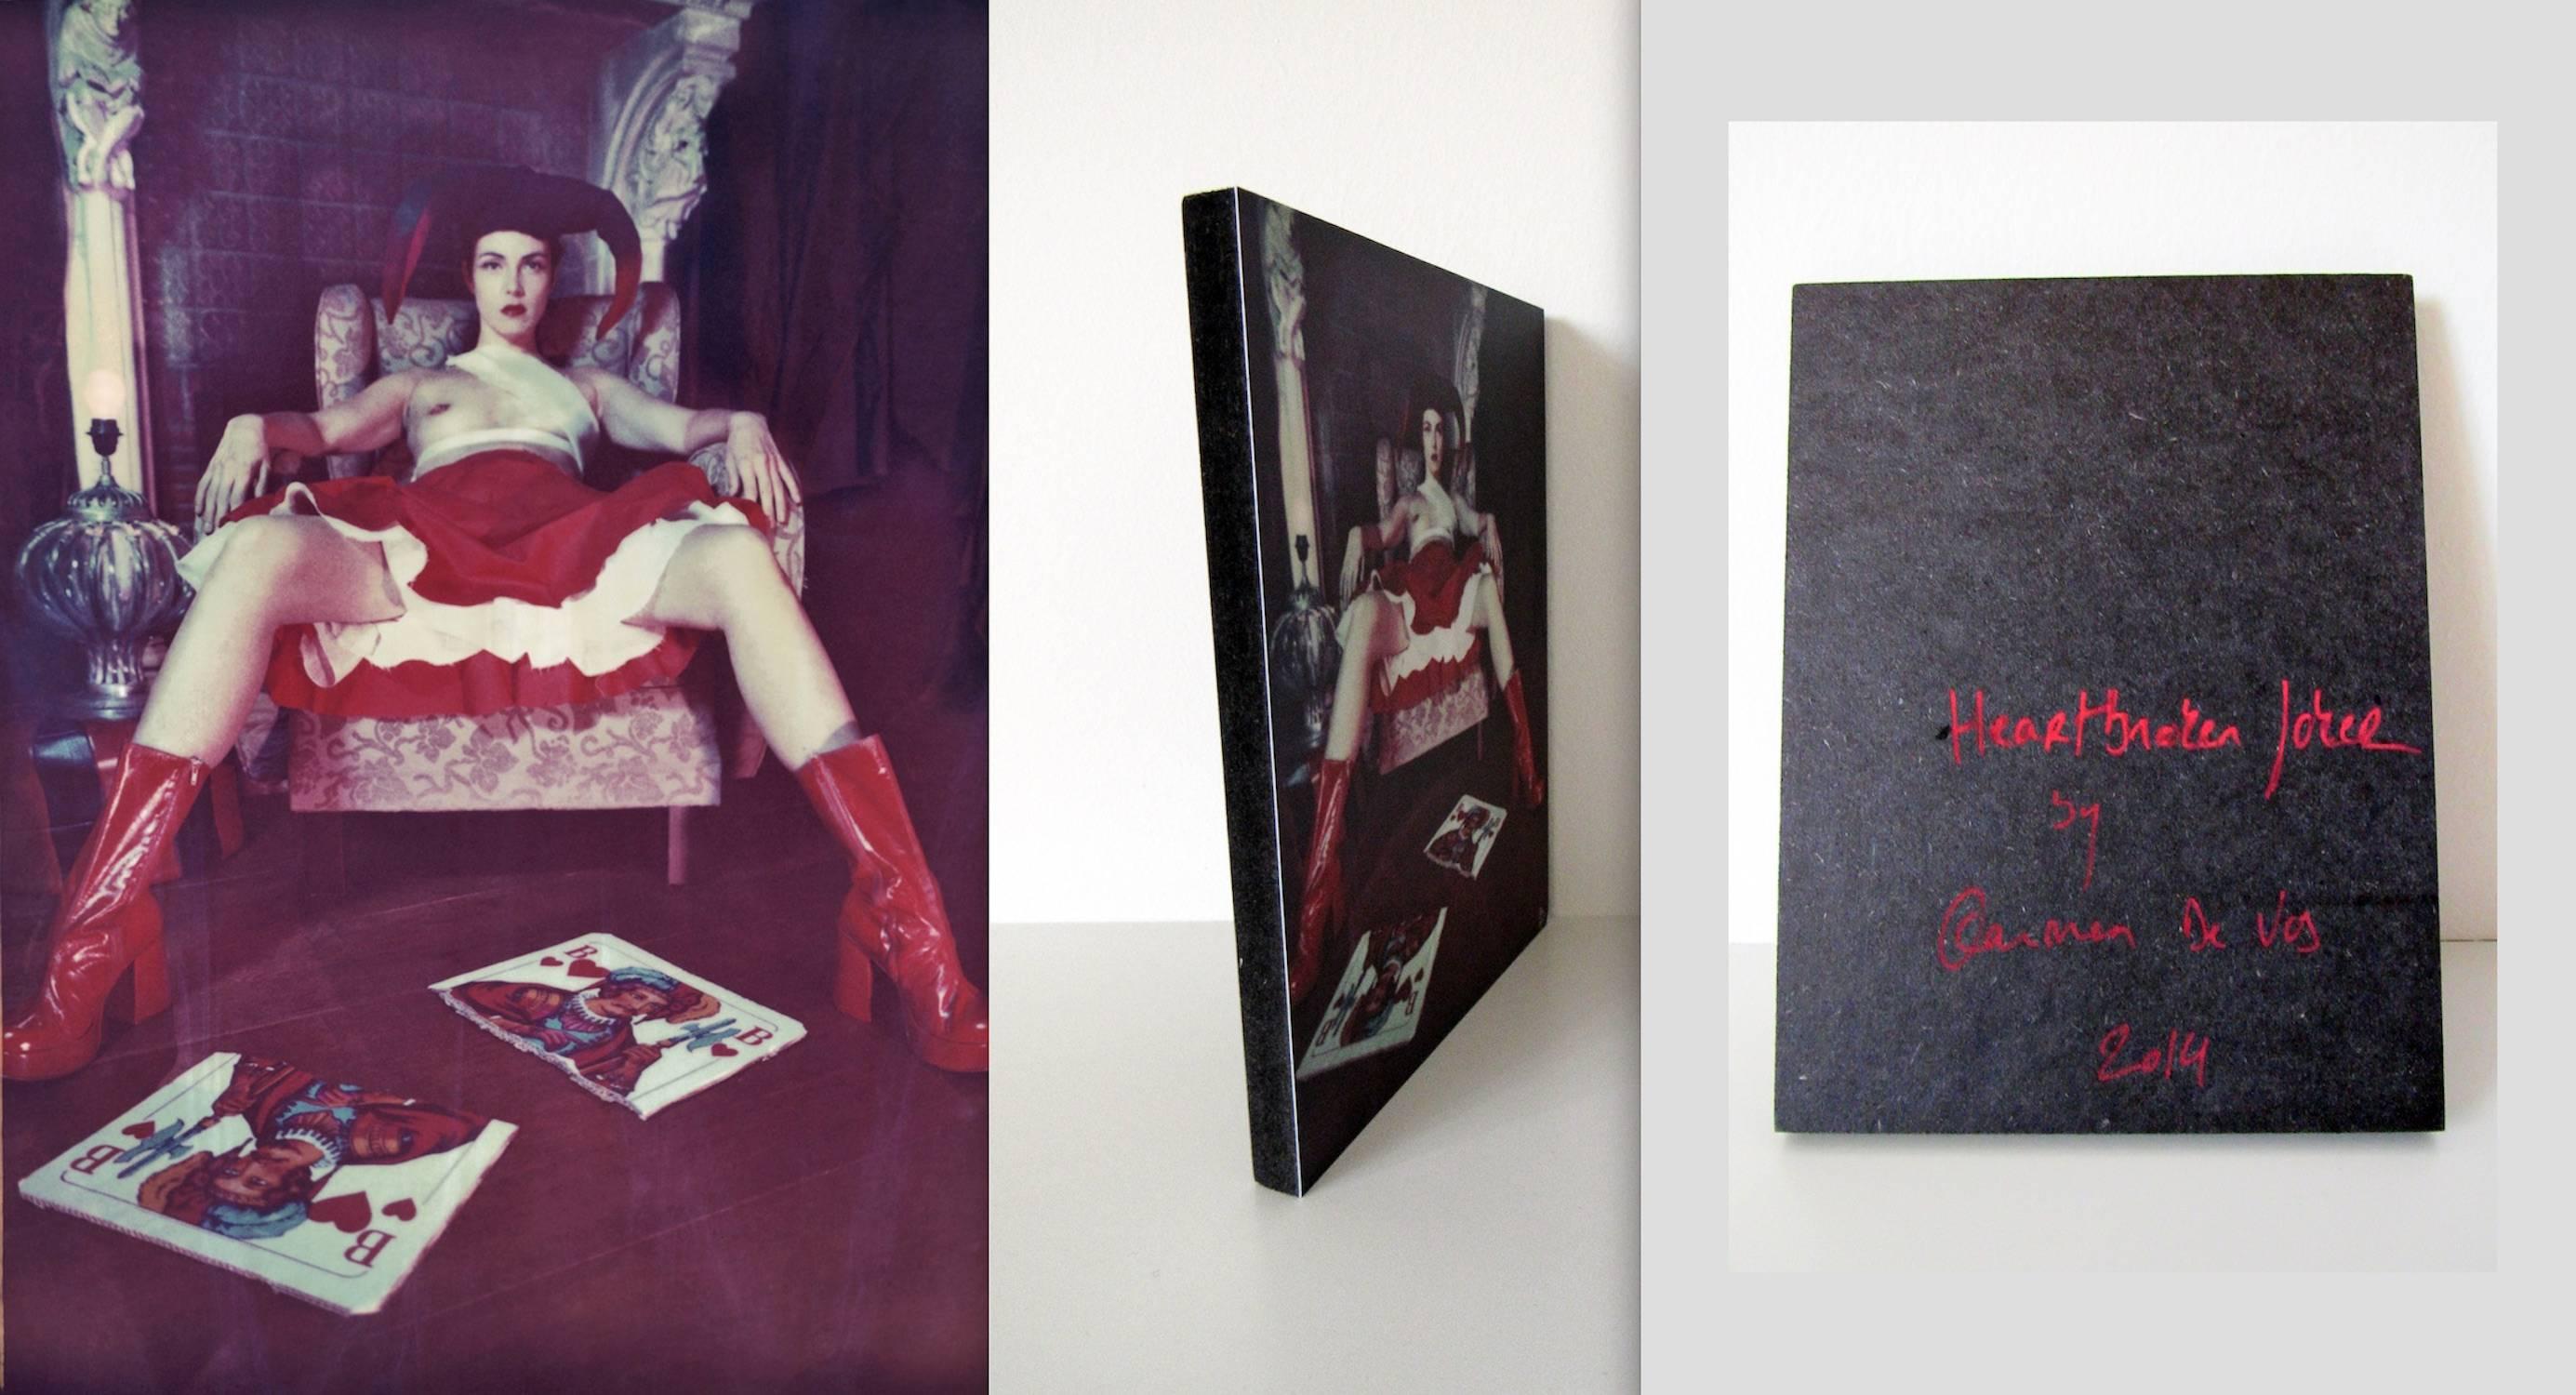 Heartbroken Joker (Odd Stories) Polaroid, Zeitgenössisch, 21. Jahrhundert, Frauen – Photograph von Carmen de Vos